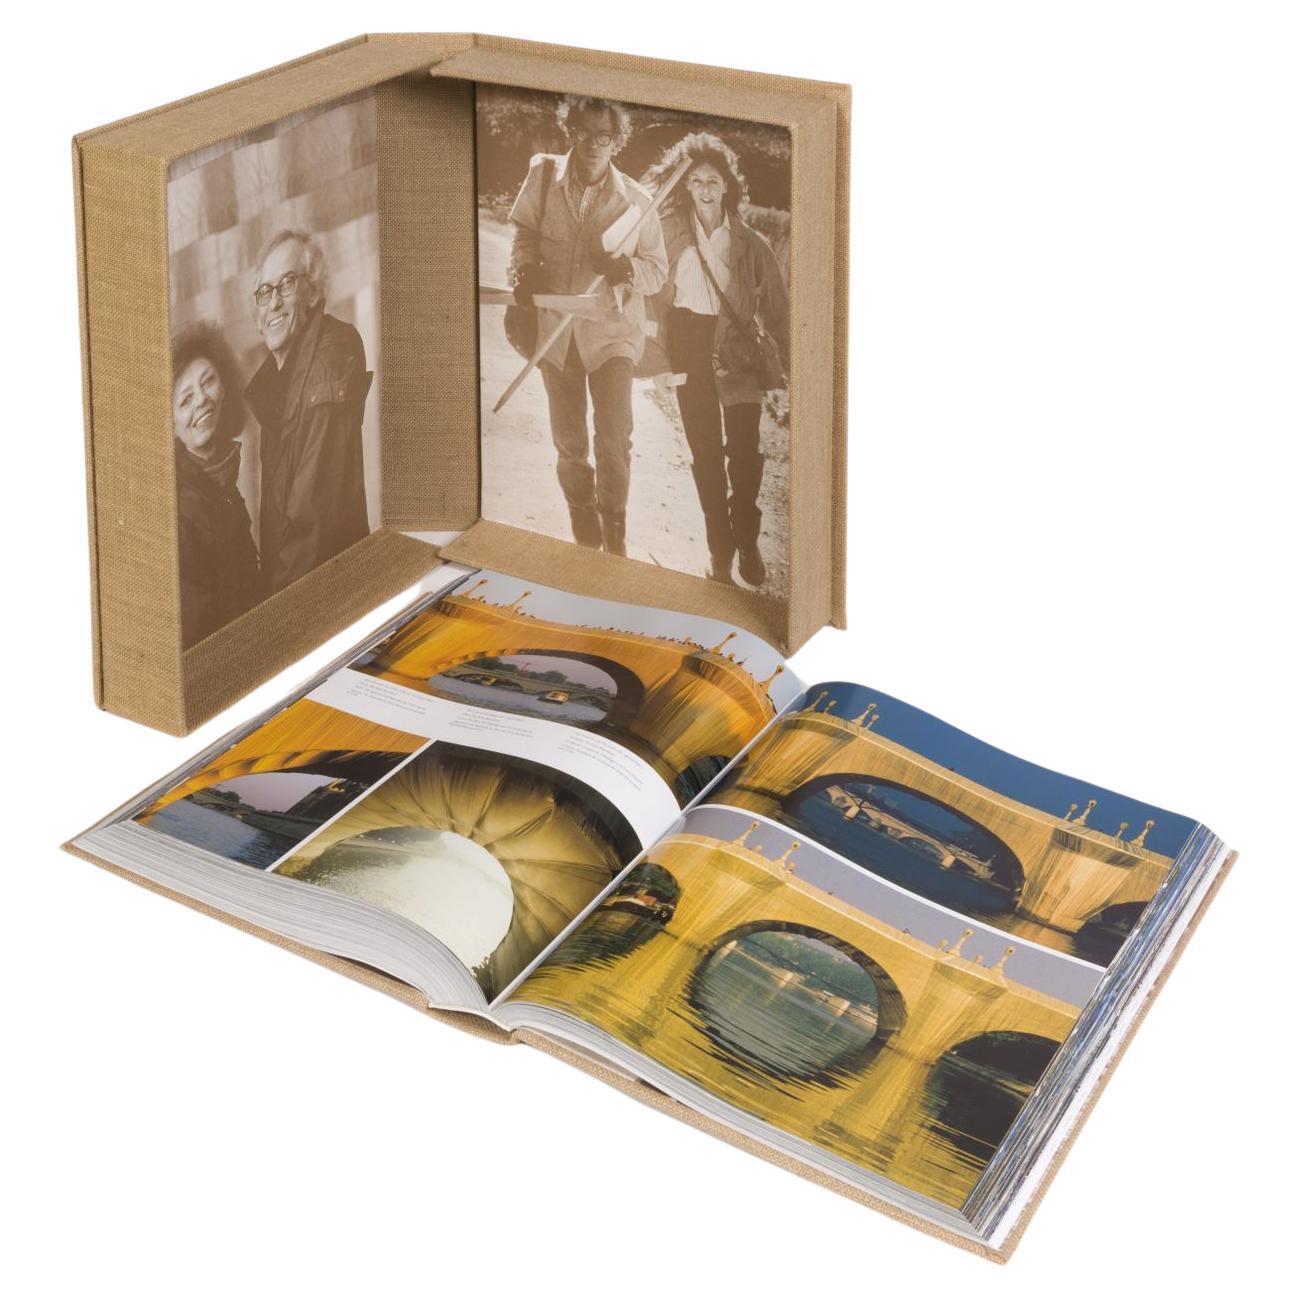 Livre biographique de Christo et Jeanne-Claude 75 en édition limitée par Taschen